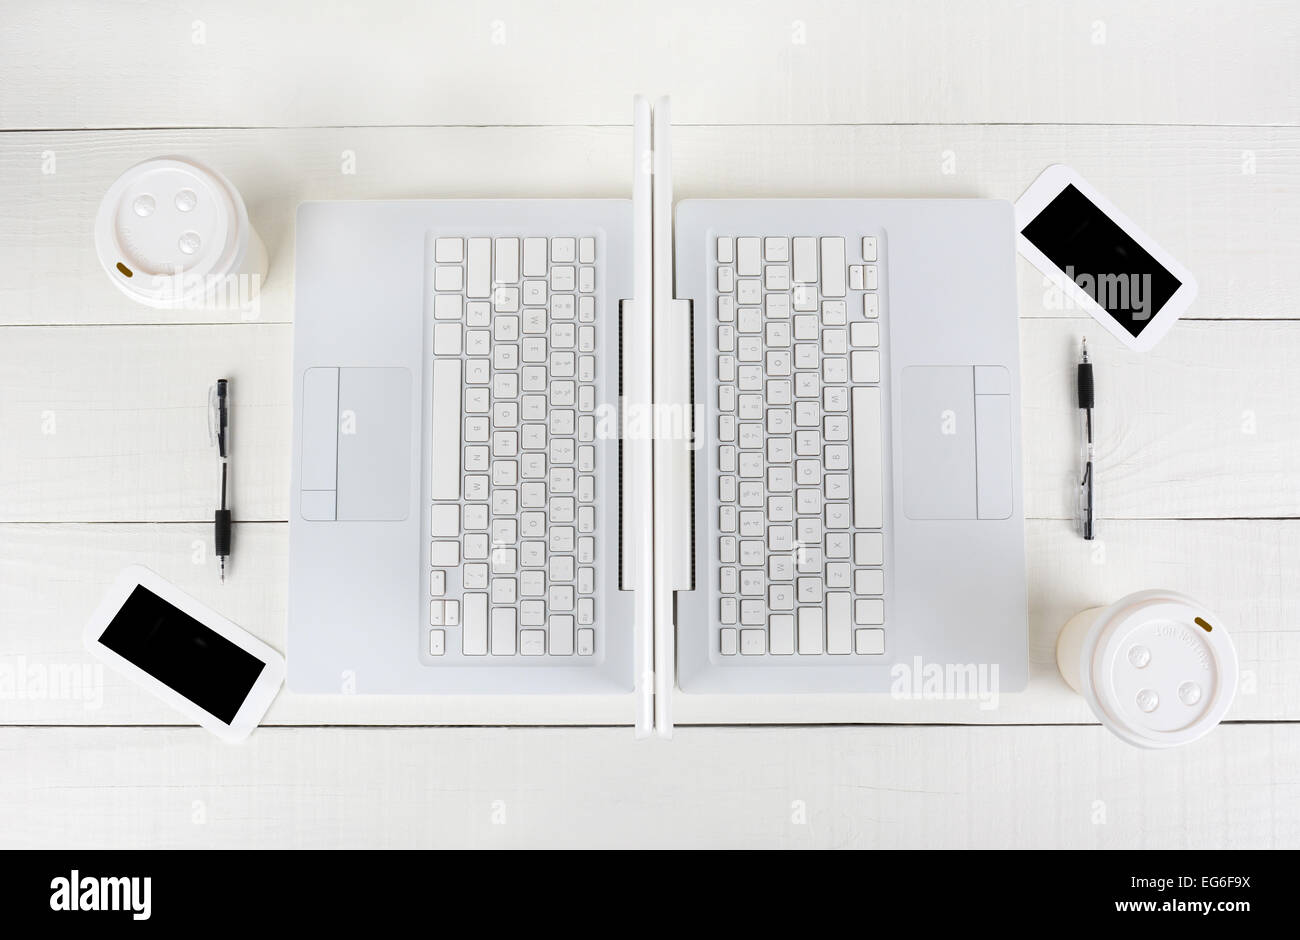 Hohen Winkel Schuss von zwei Laptop-Arbeitsplätze mit spiegelbildlich identische Layouts Rücken an Rücken. Querformat auf einem weißen Holz Stockfoto